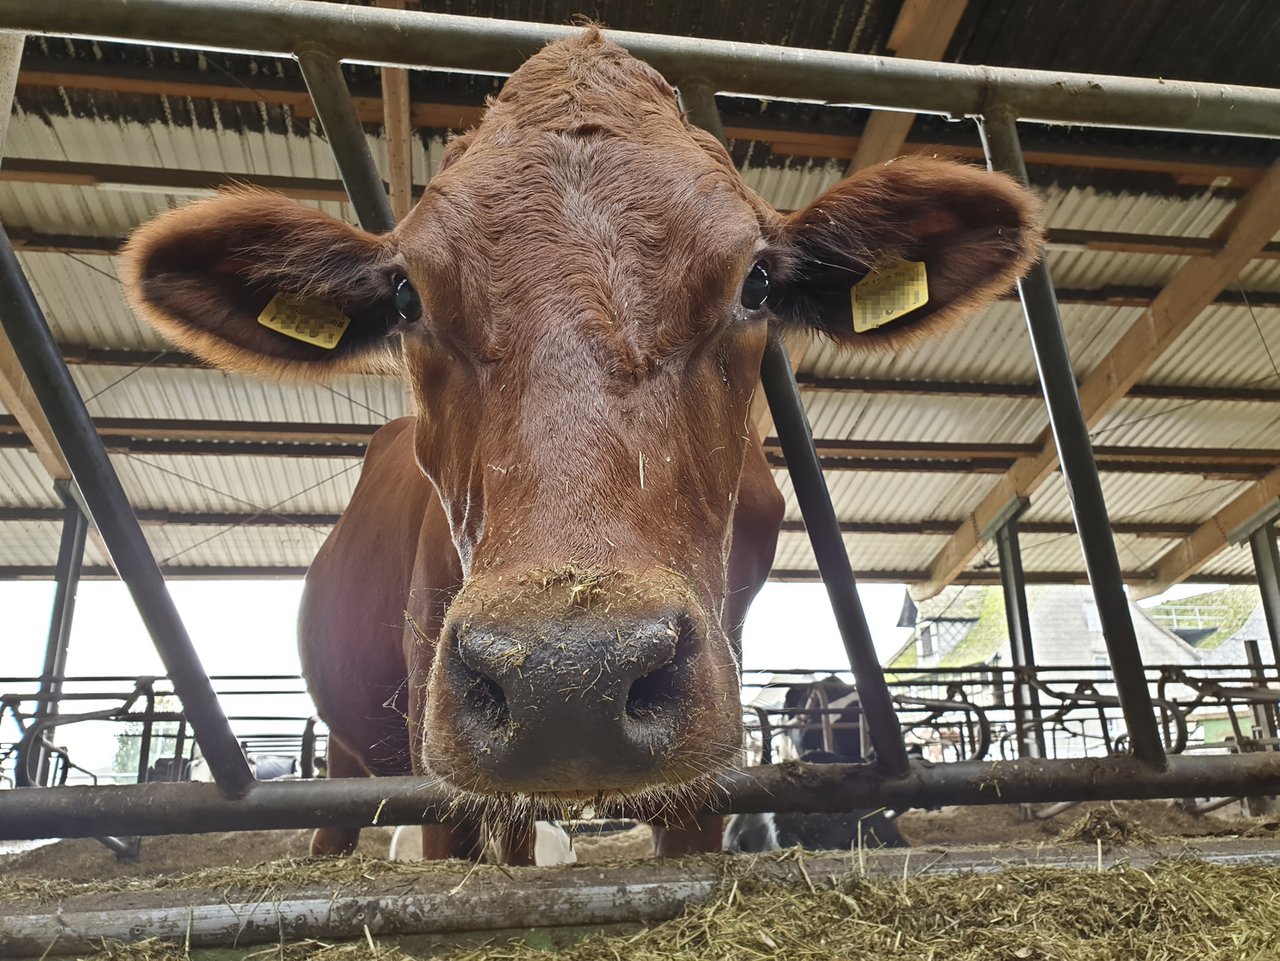 Rasche und verlässliche Informationen zu einer Kuh können die Tiergesundheit steigern. (Symbolbild lid/ji)